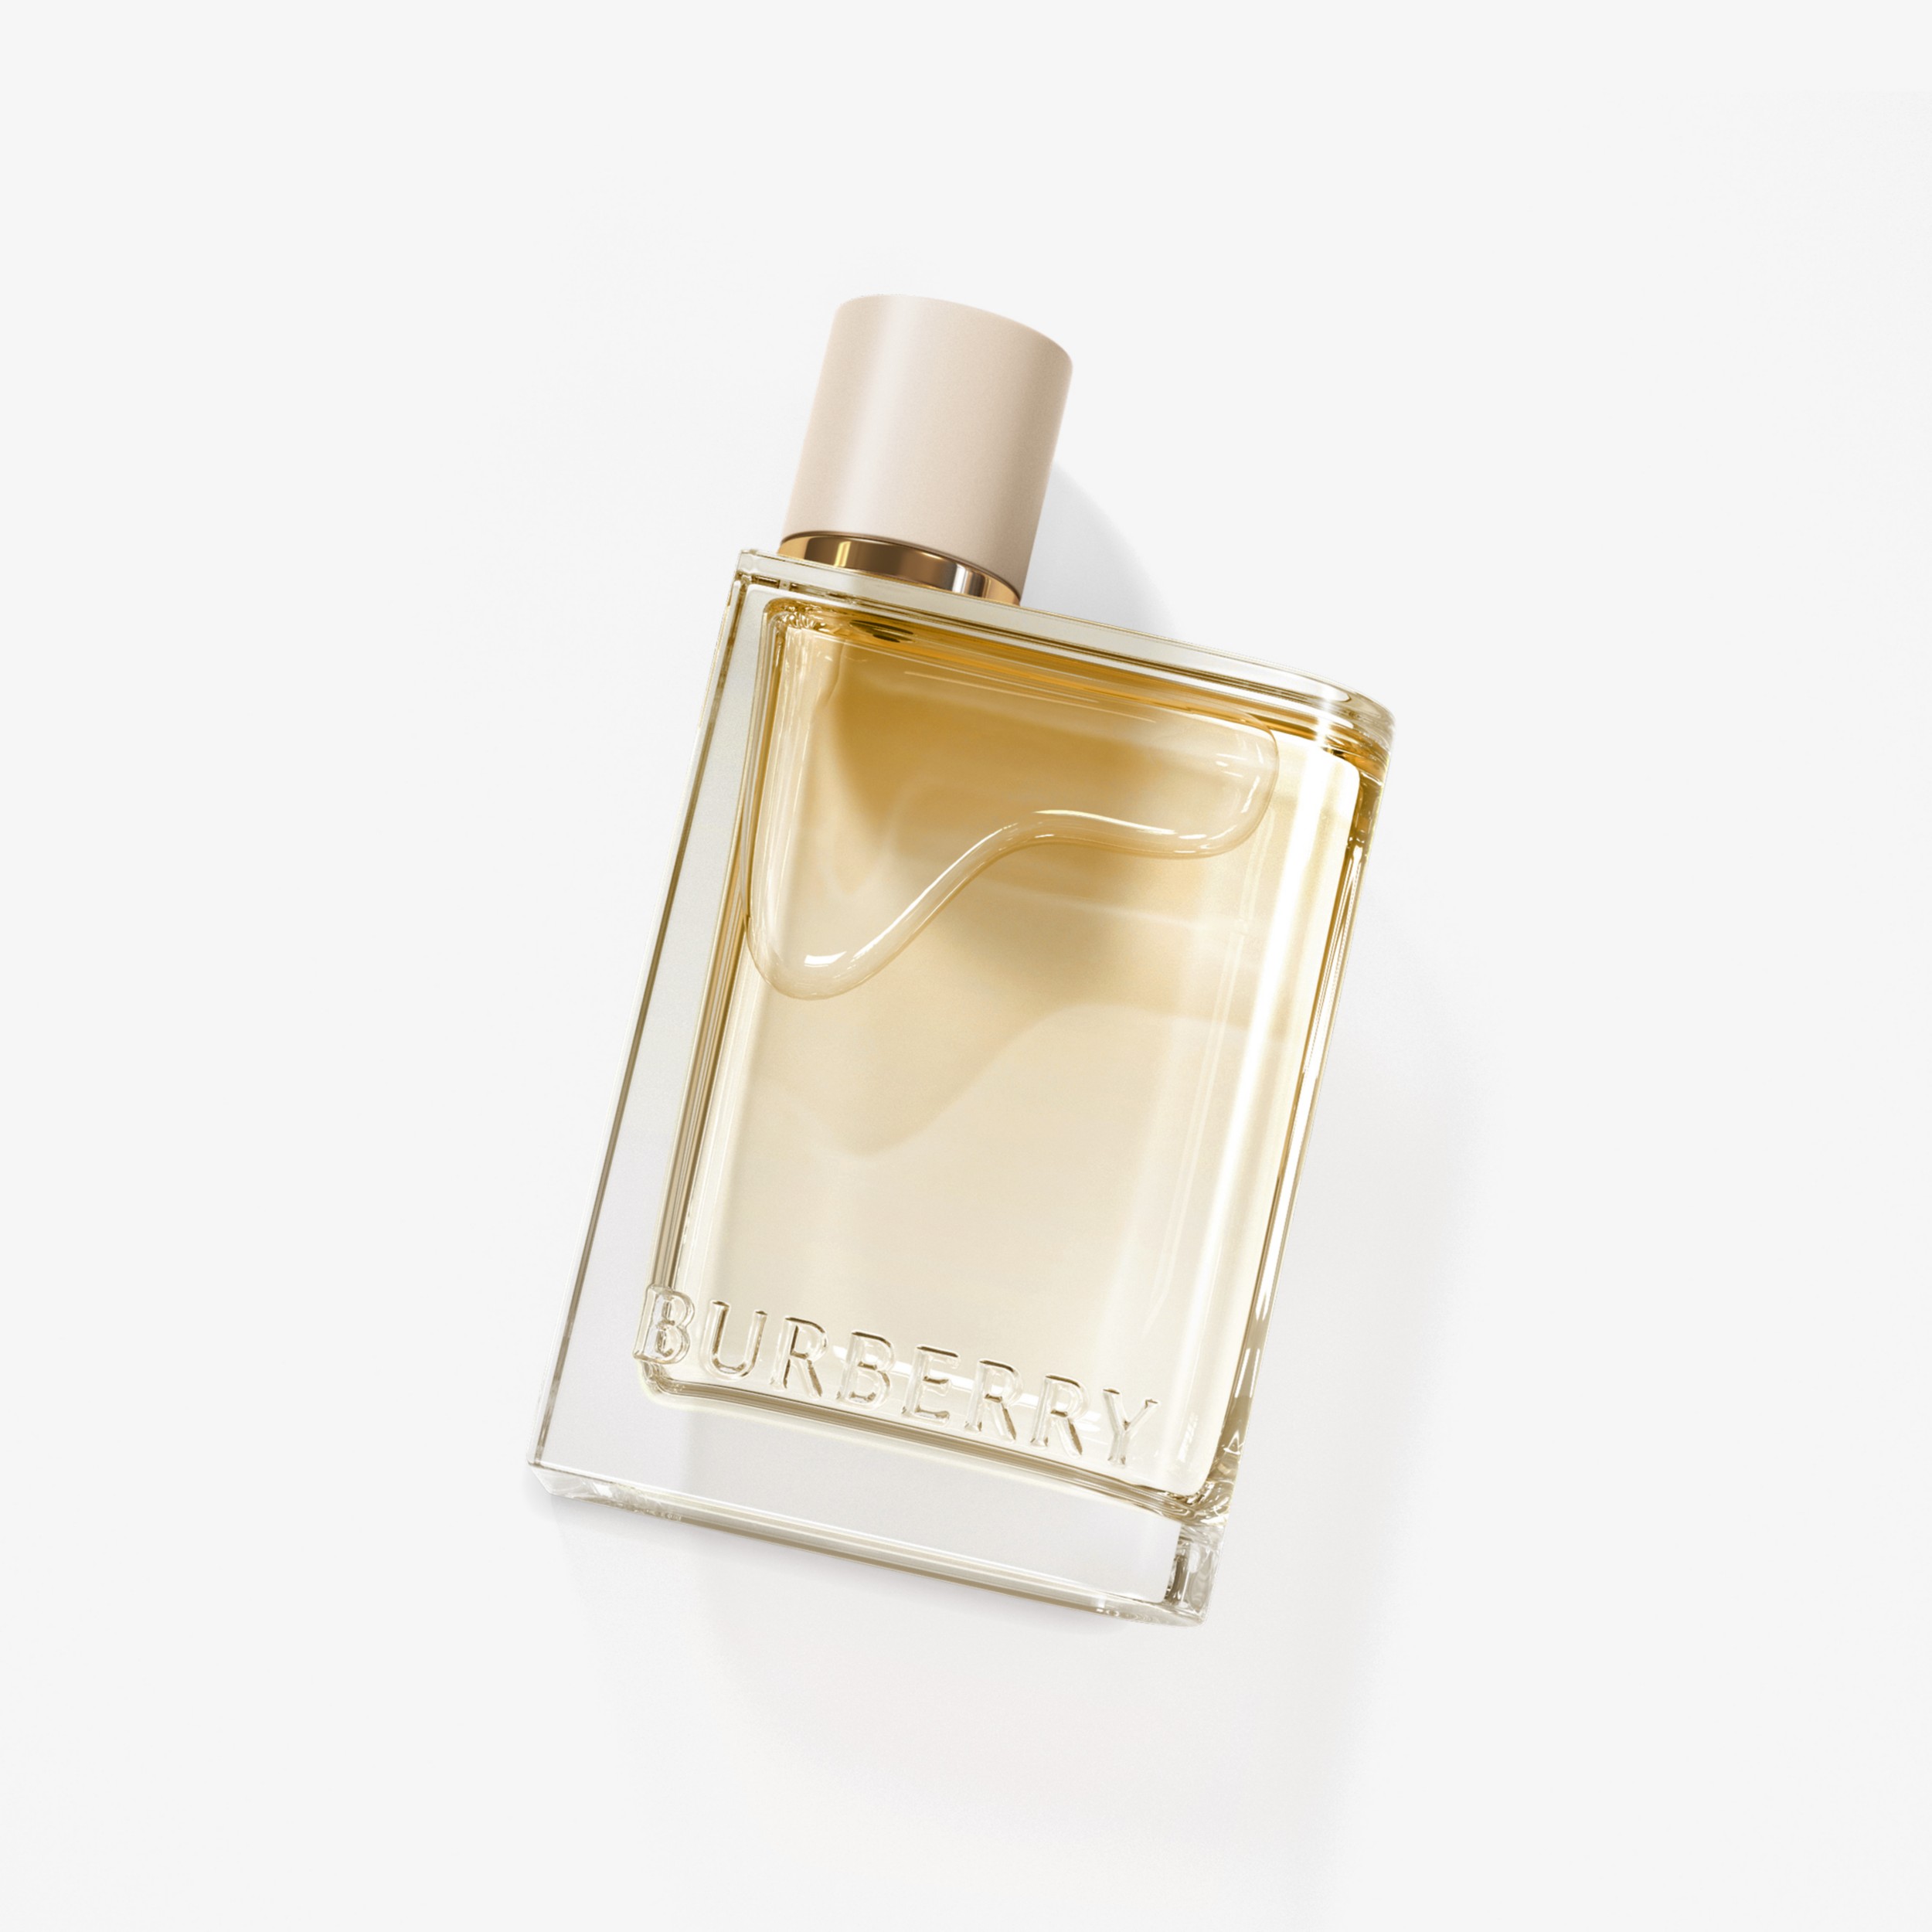 Her London Dream Eau de Parfum de 100 ml (100ml) - Mujer | Burberry® oficial